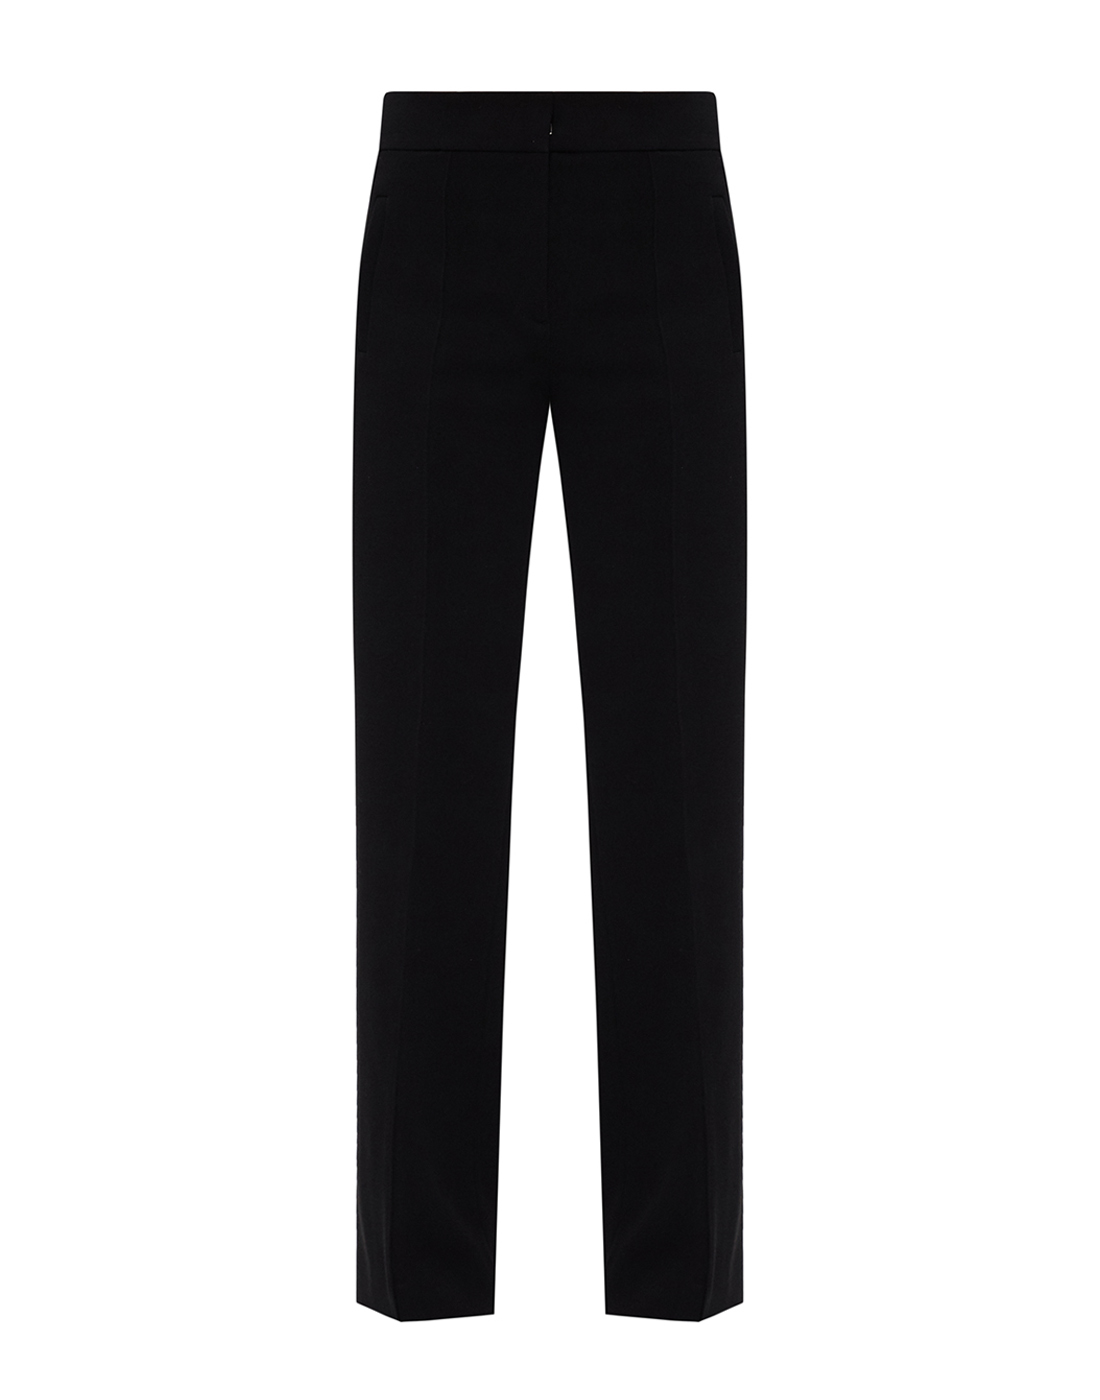 Женские черные брюки Dorothee Schumacher S142013/999-1